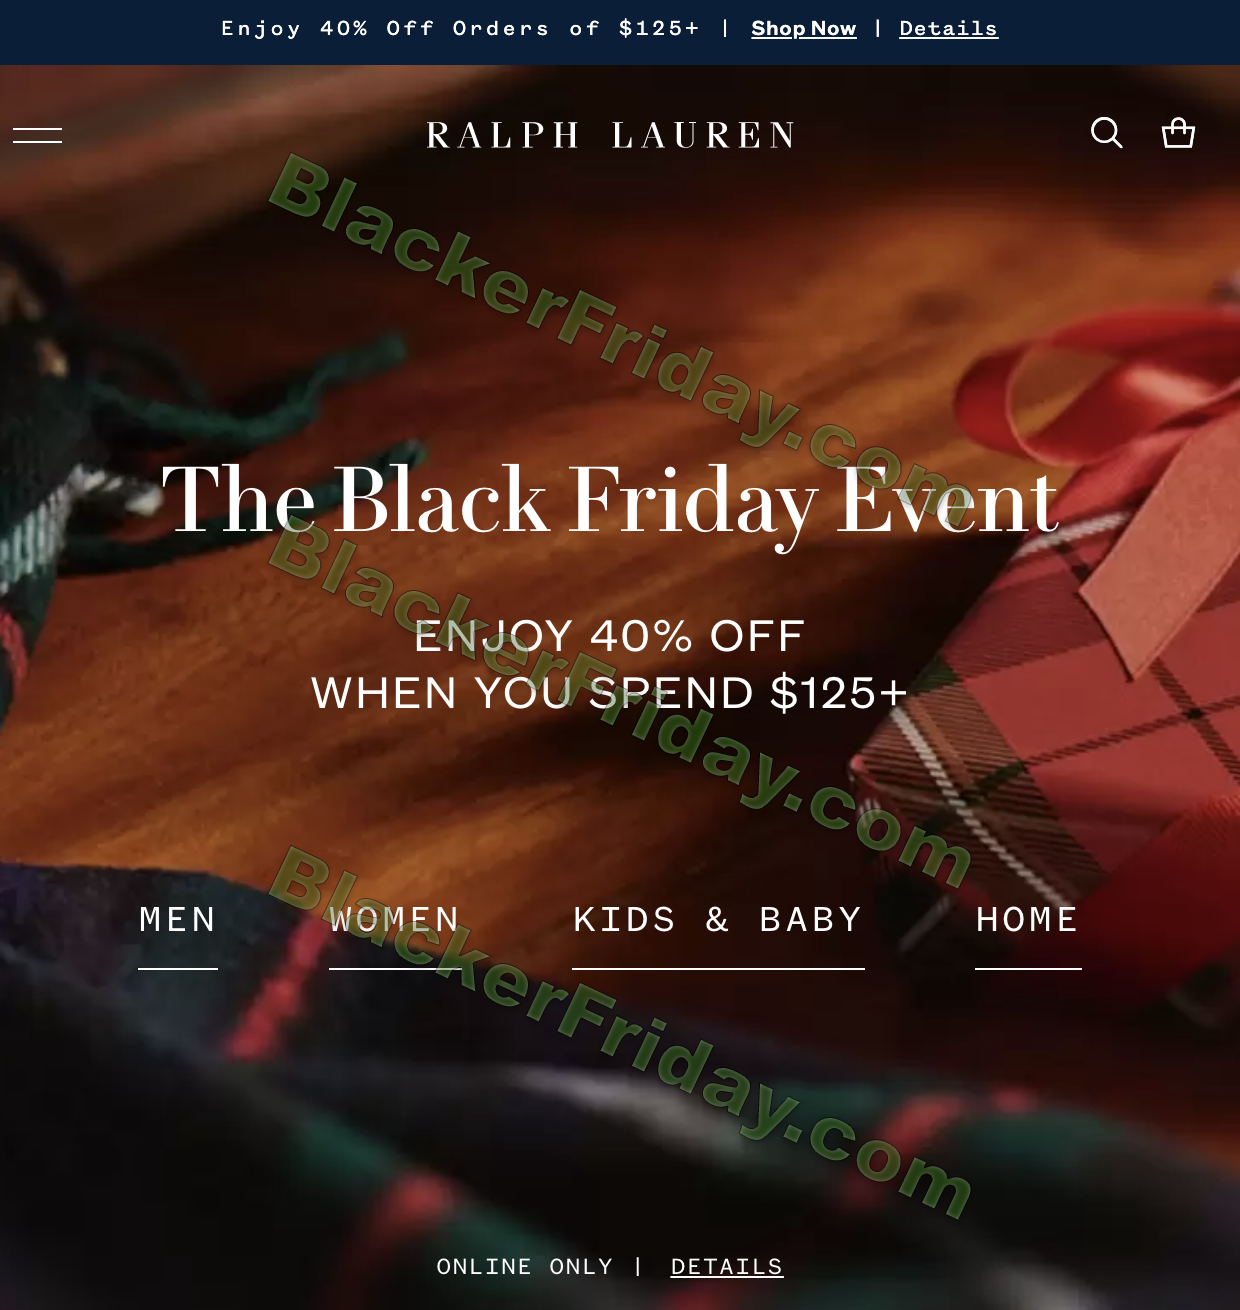 Migratie Bewolkt slang What to expect at Ralph Lauren's Black Friday 2023 Sale - Blacker Friday